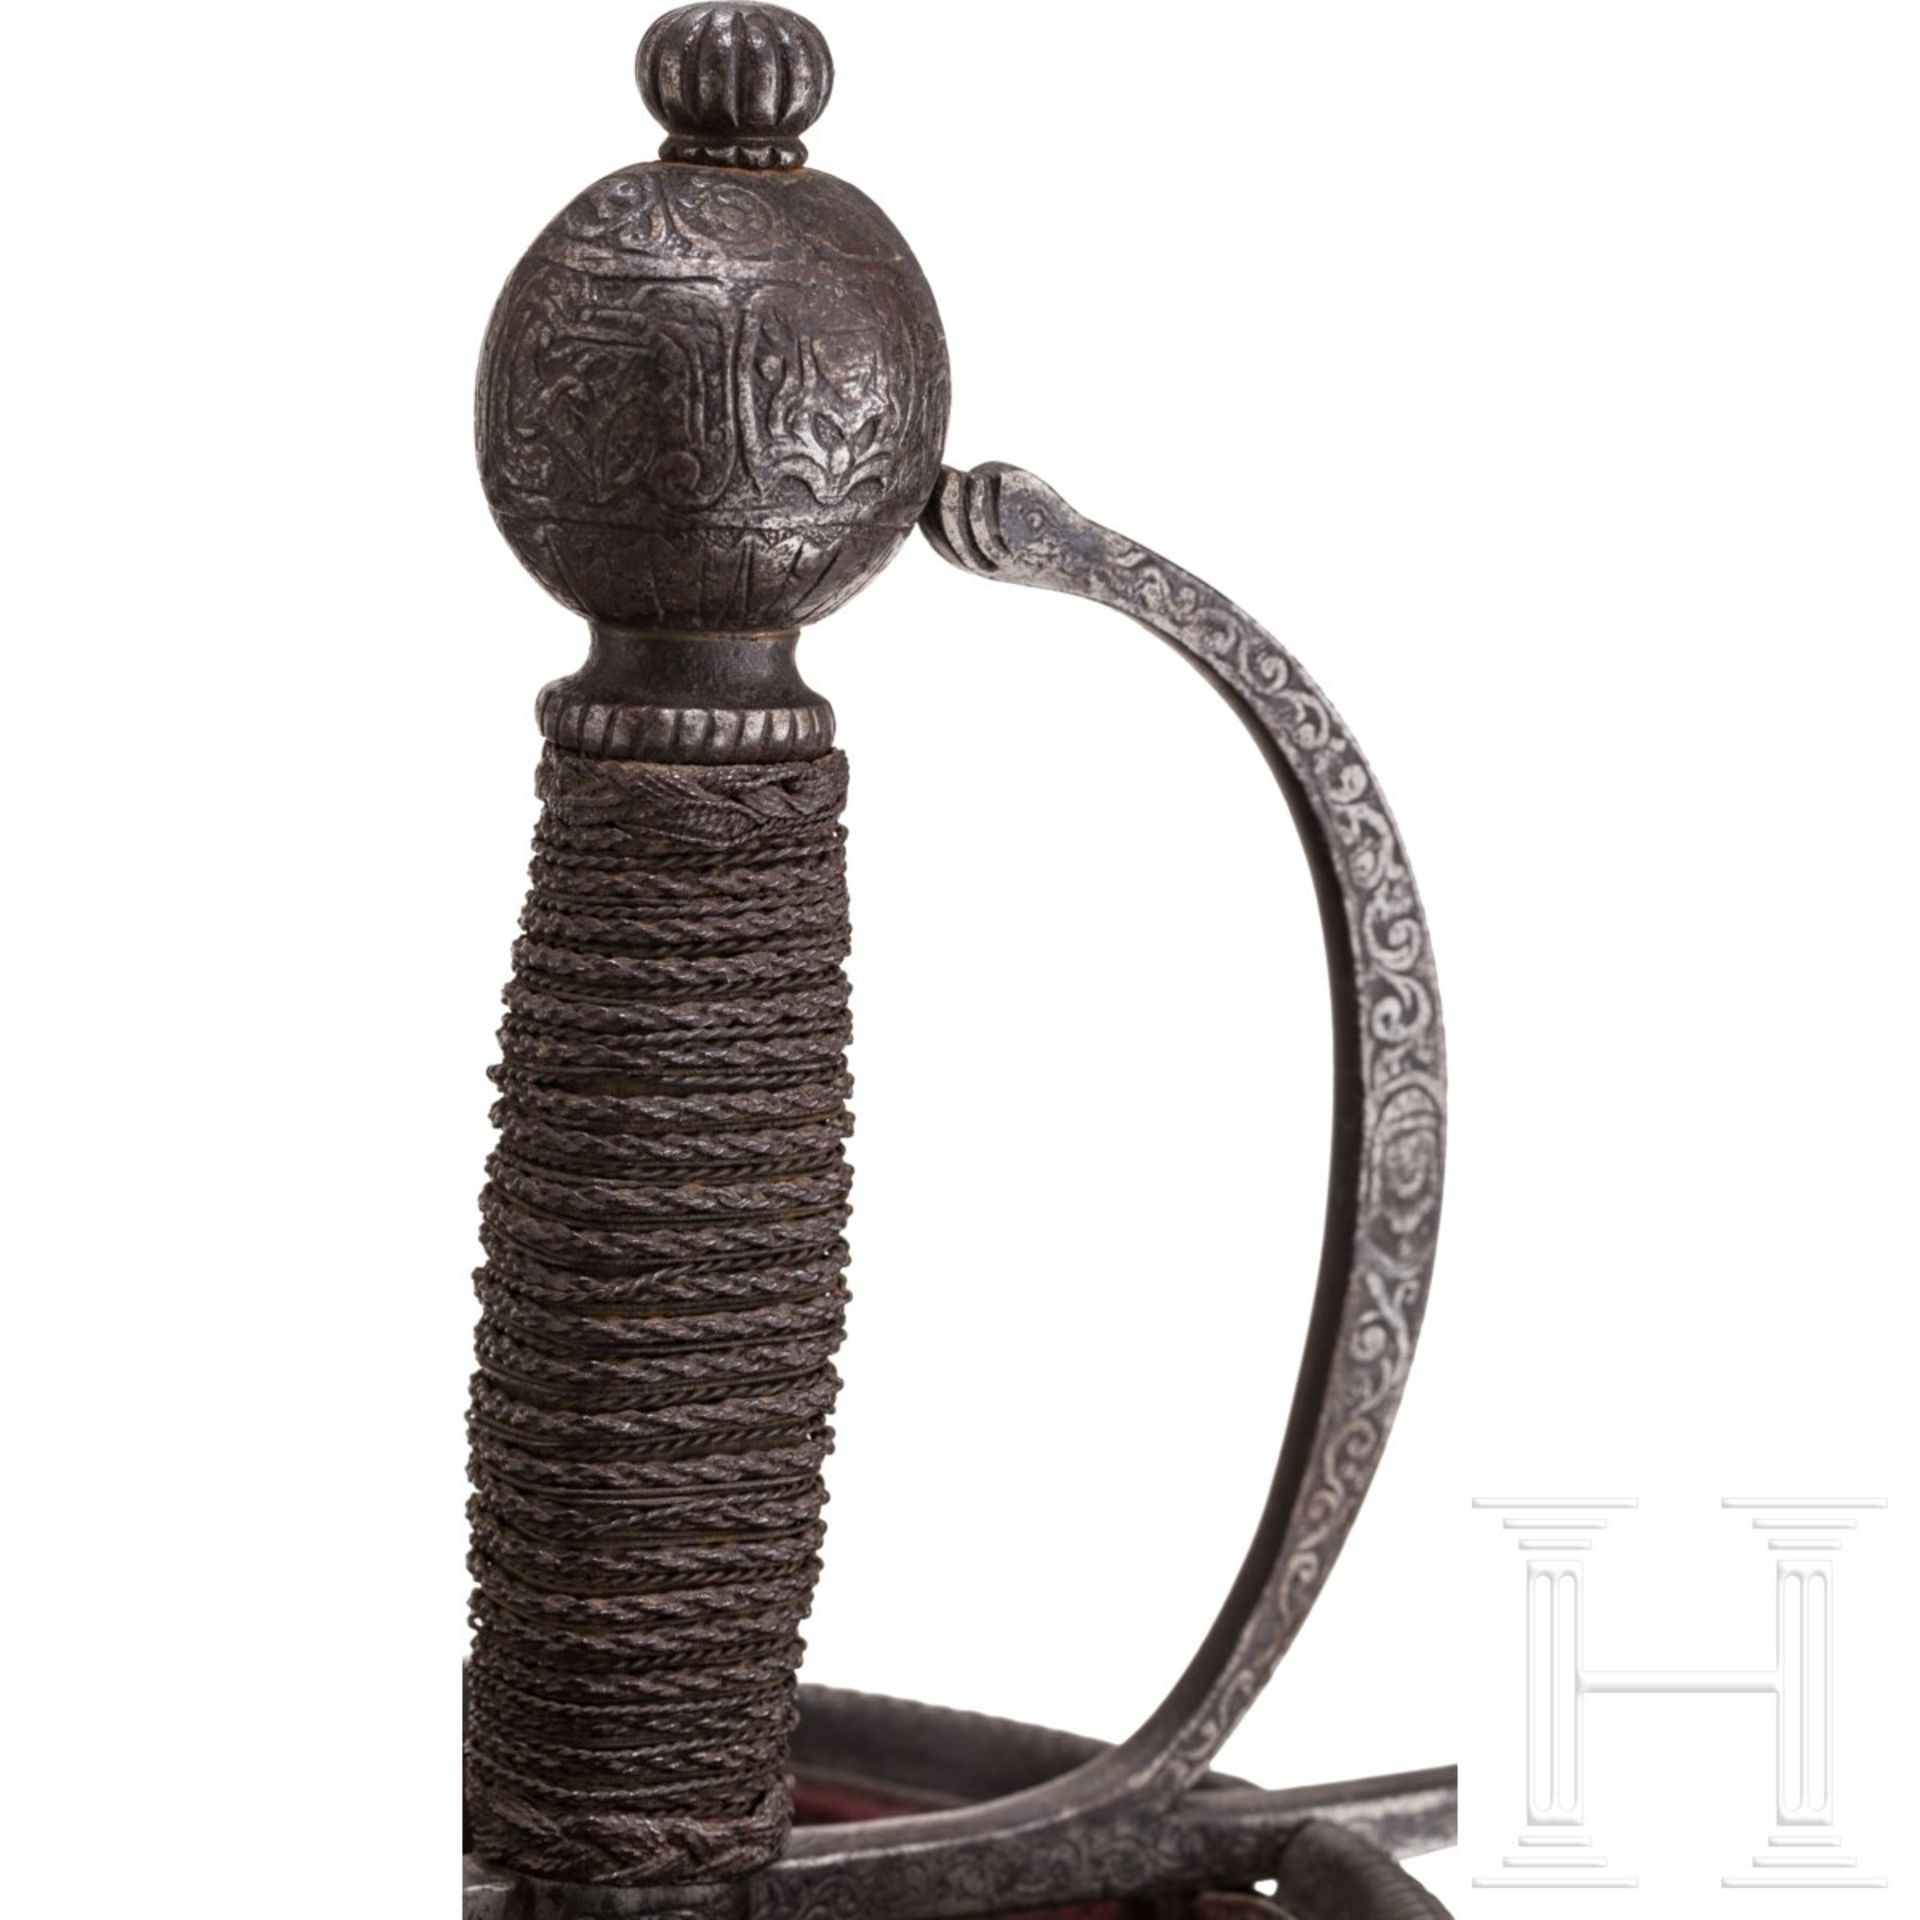 Glockenrapier im italienischen Stil des 17. Jhdts., Historismus, 19. Jhdt. - Image 6 of 6